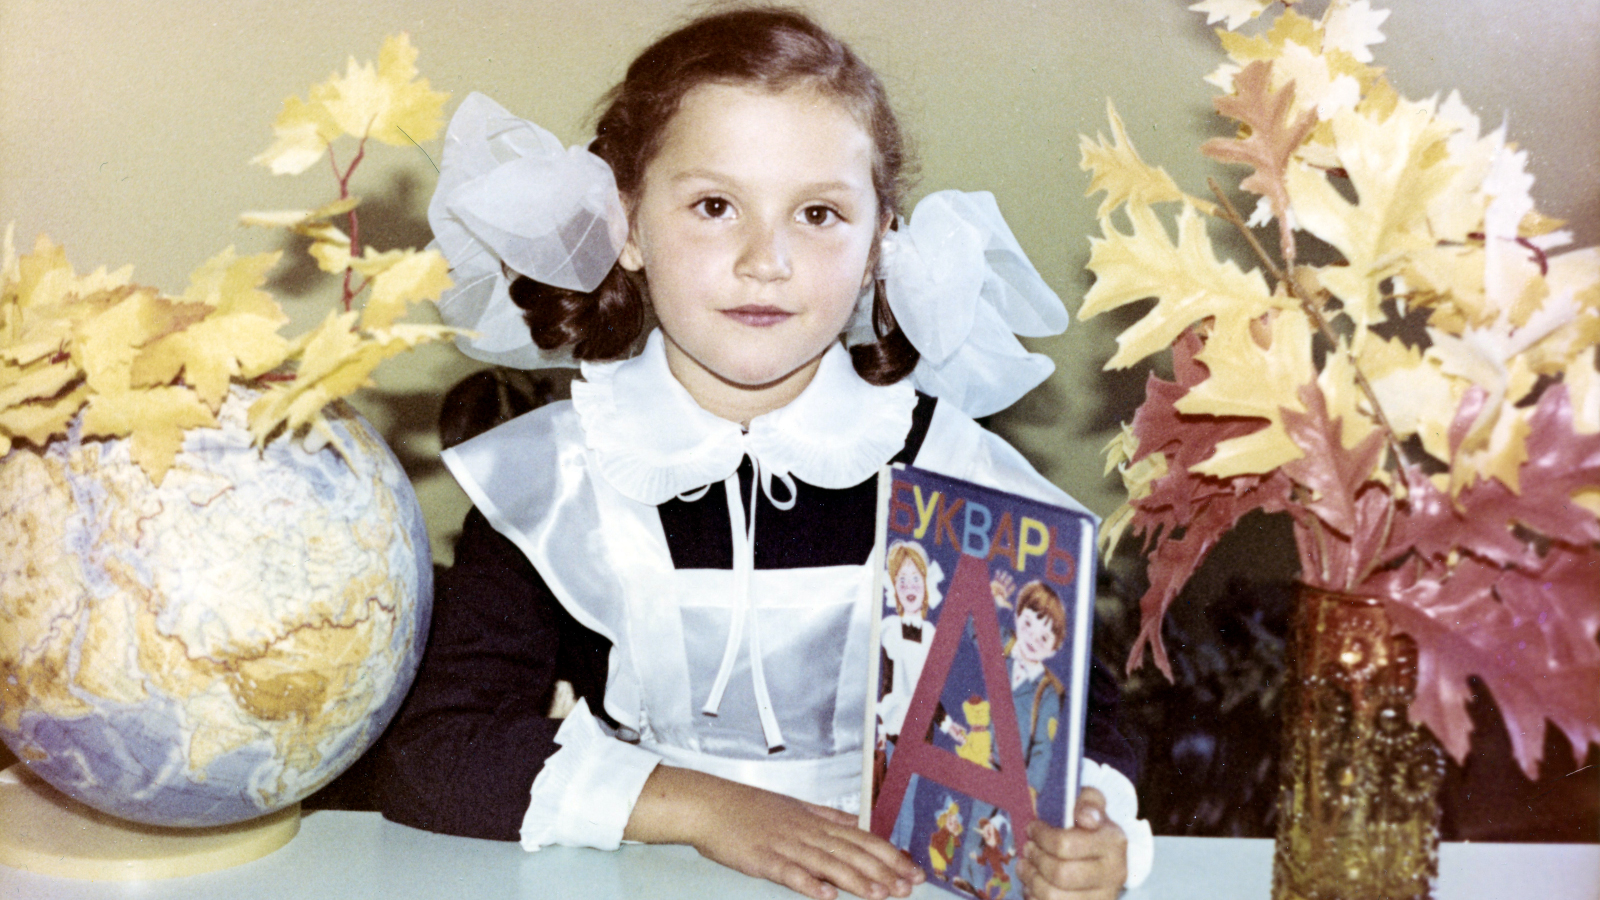 Kuvassa on Neuvostoliitossa asuva tyttö koulupuvussa isot rusetit päässa ja koulukirja kädessä.  Hän istuu valkoisen pöydän ääressä. 